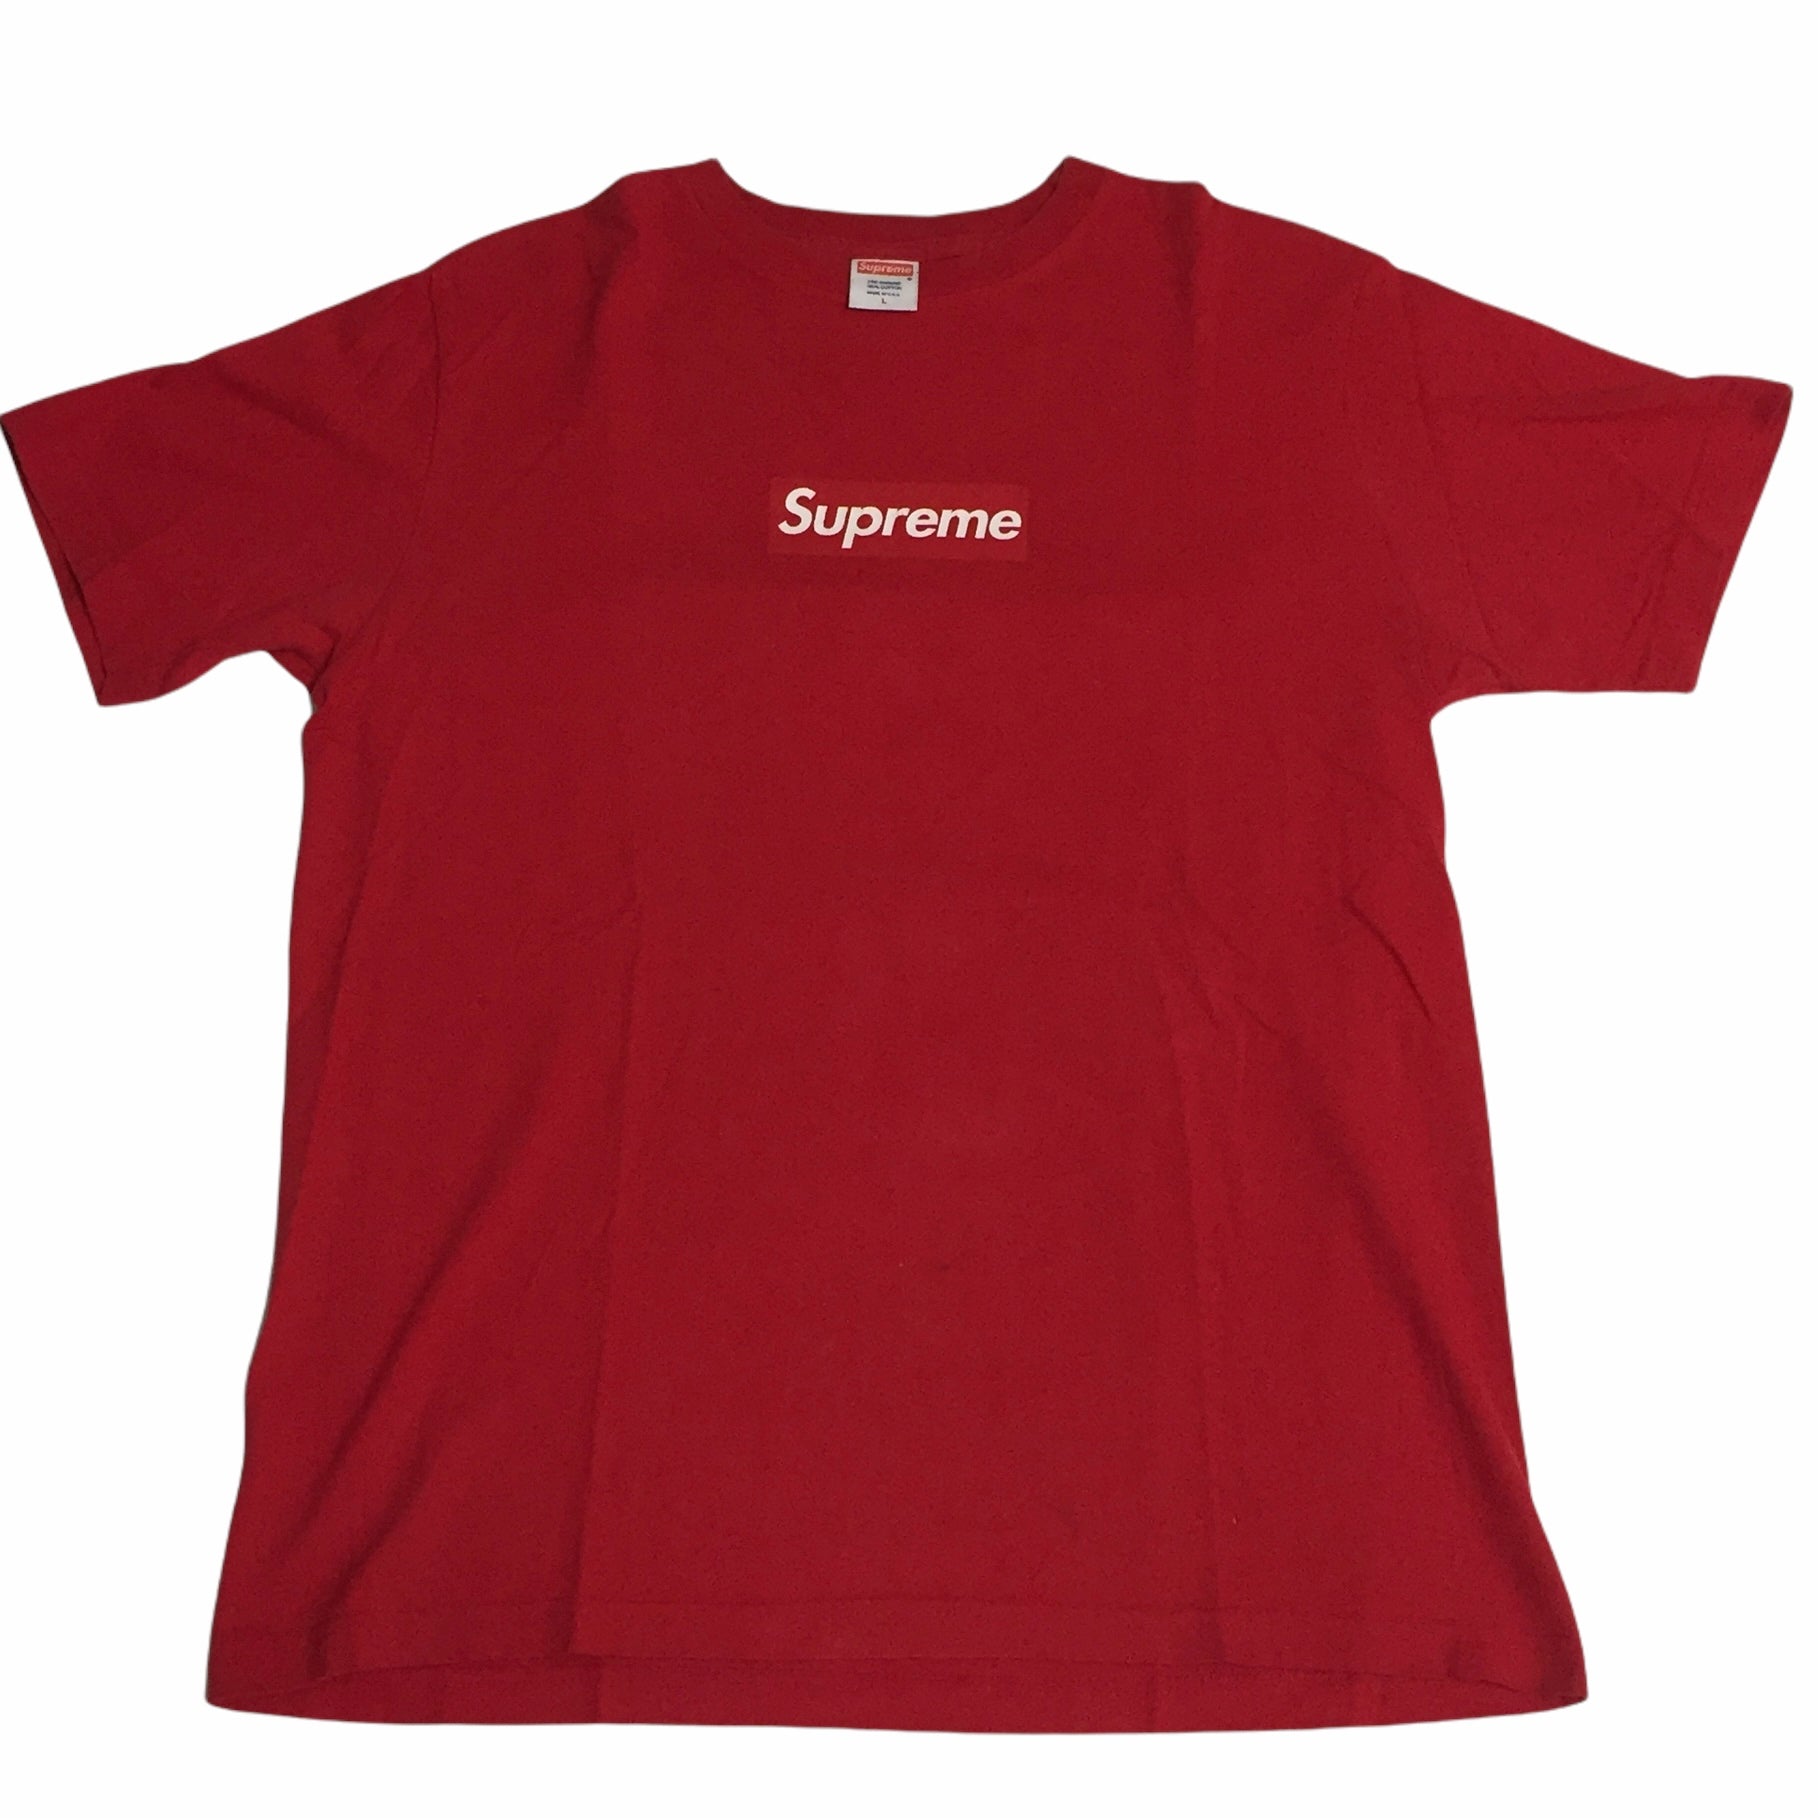 2003 Supreme Red Tonal Box Logo Tee